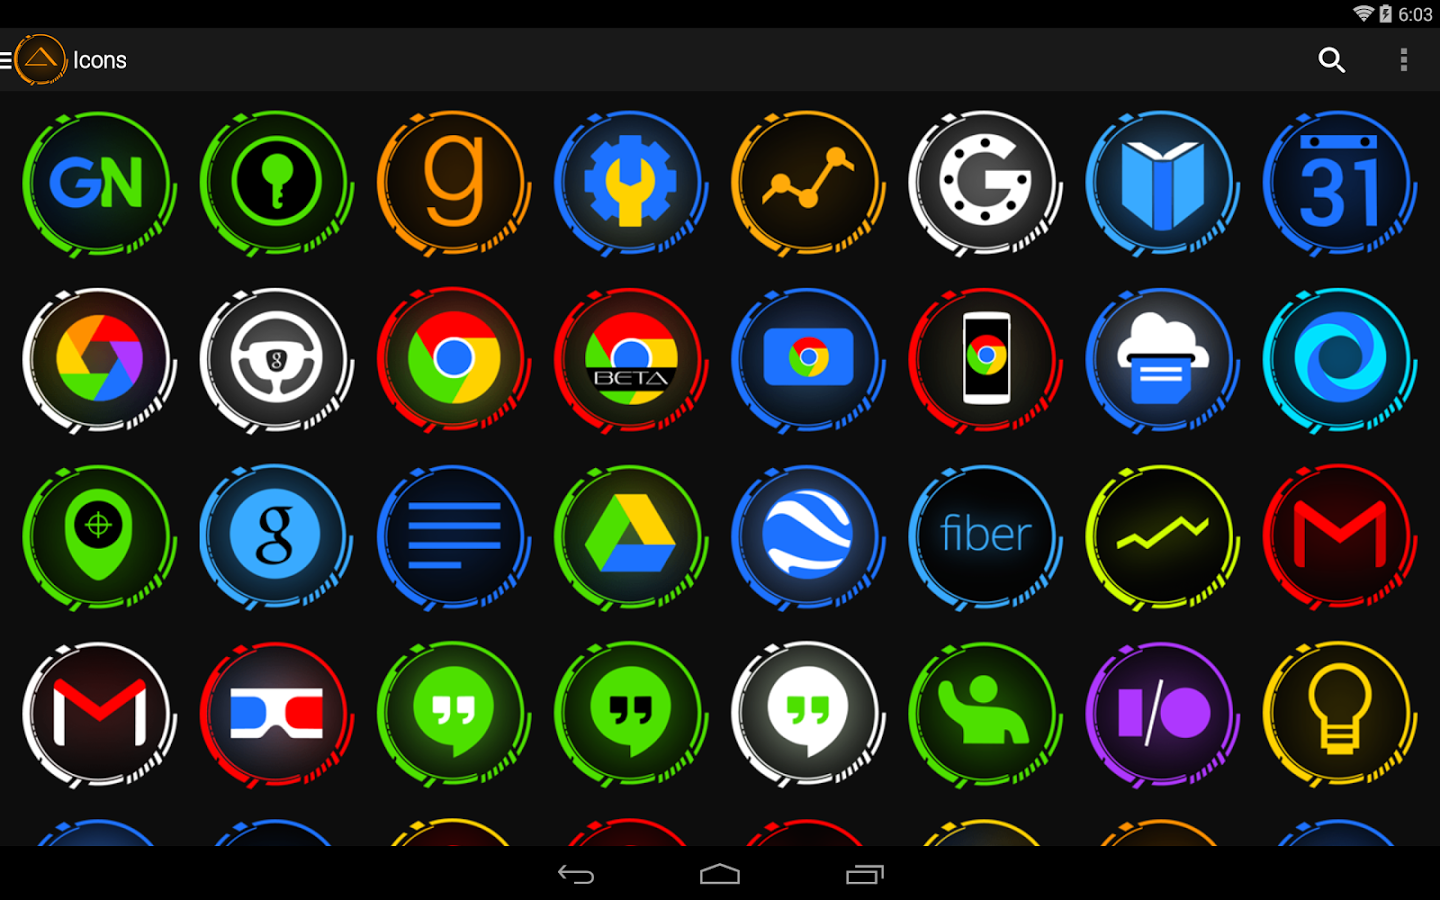 Значки андроид авто. Иконка андроид. Иконки для приложений. Иконки приложений для андроид. Красивые значки для приложений.